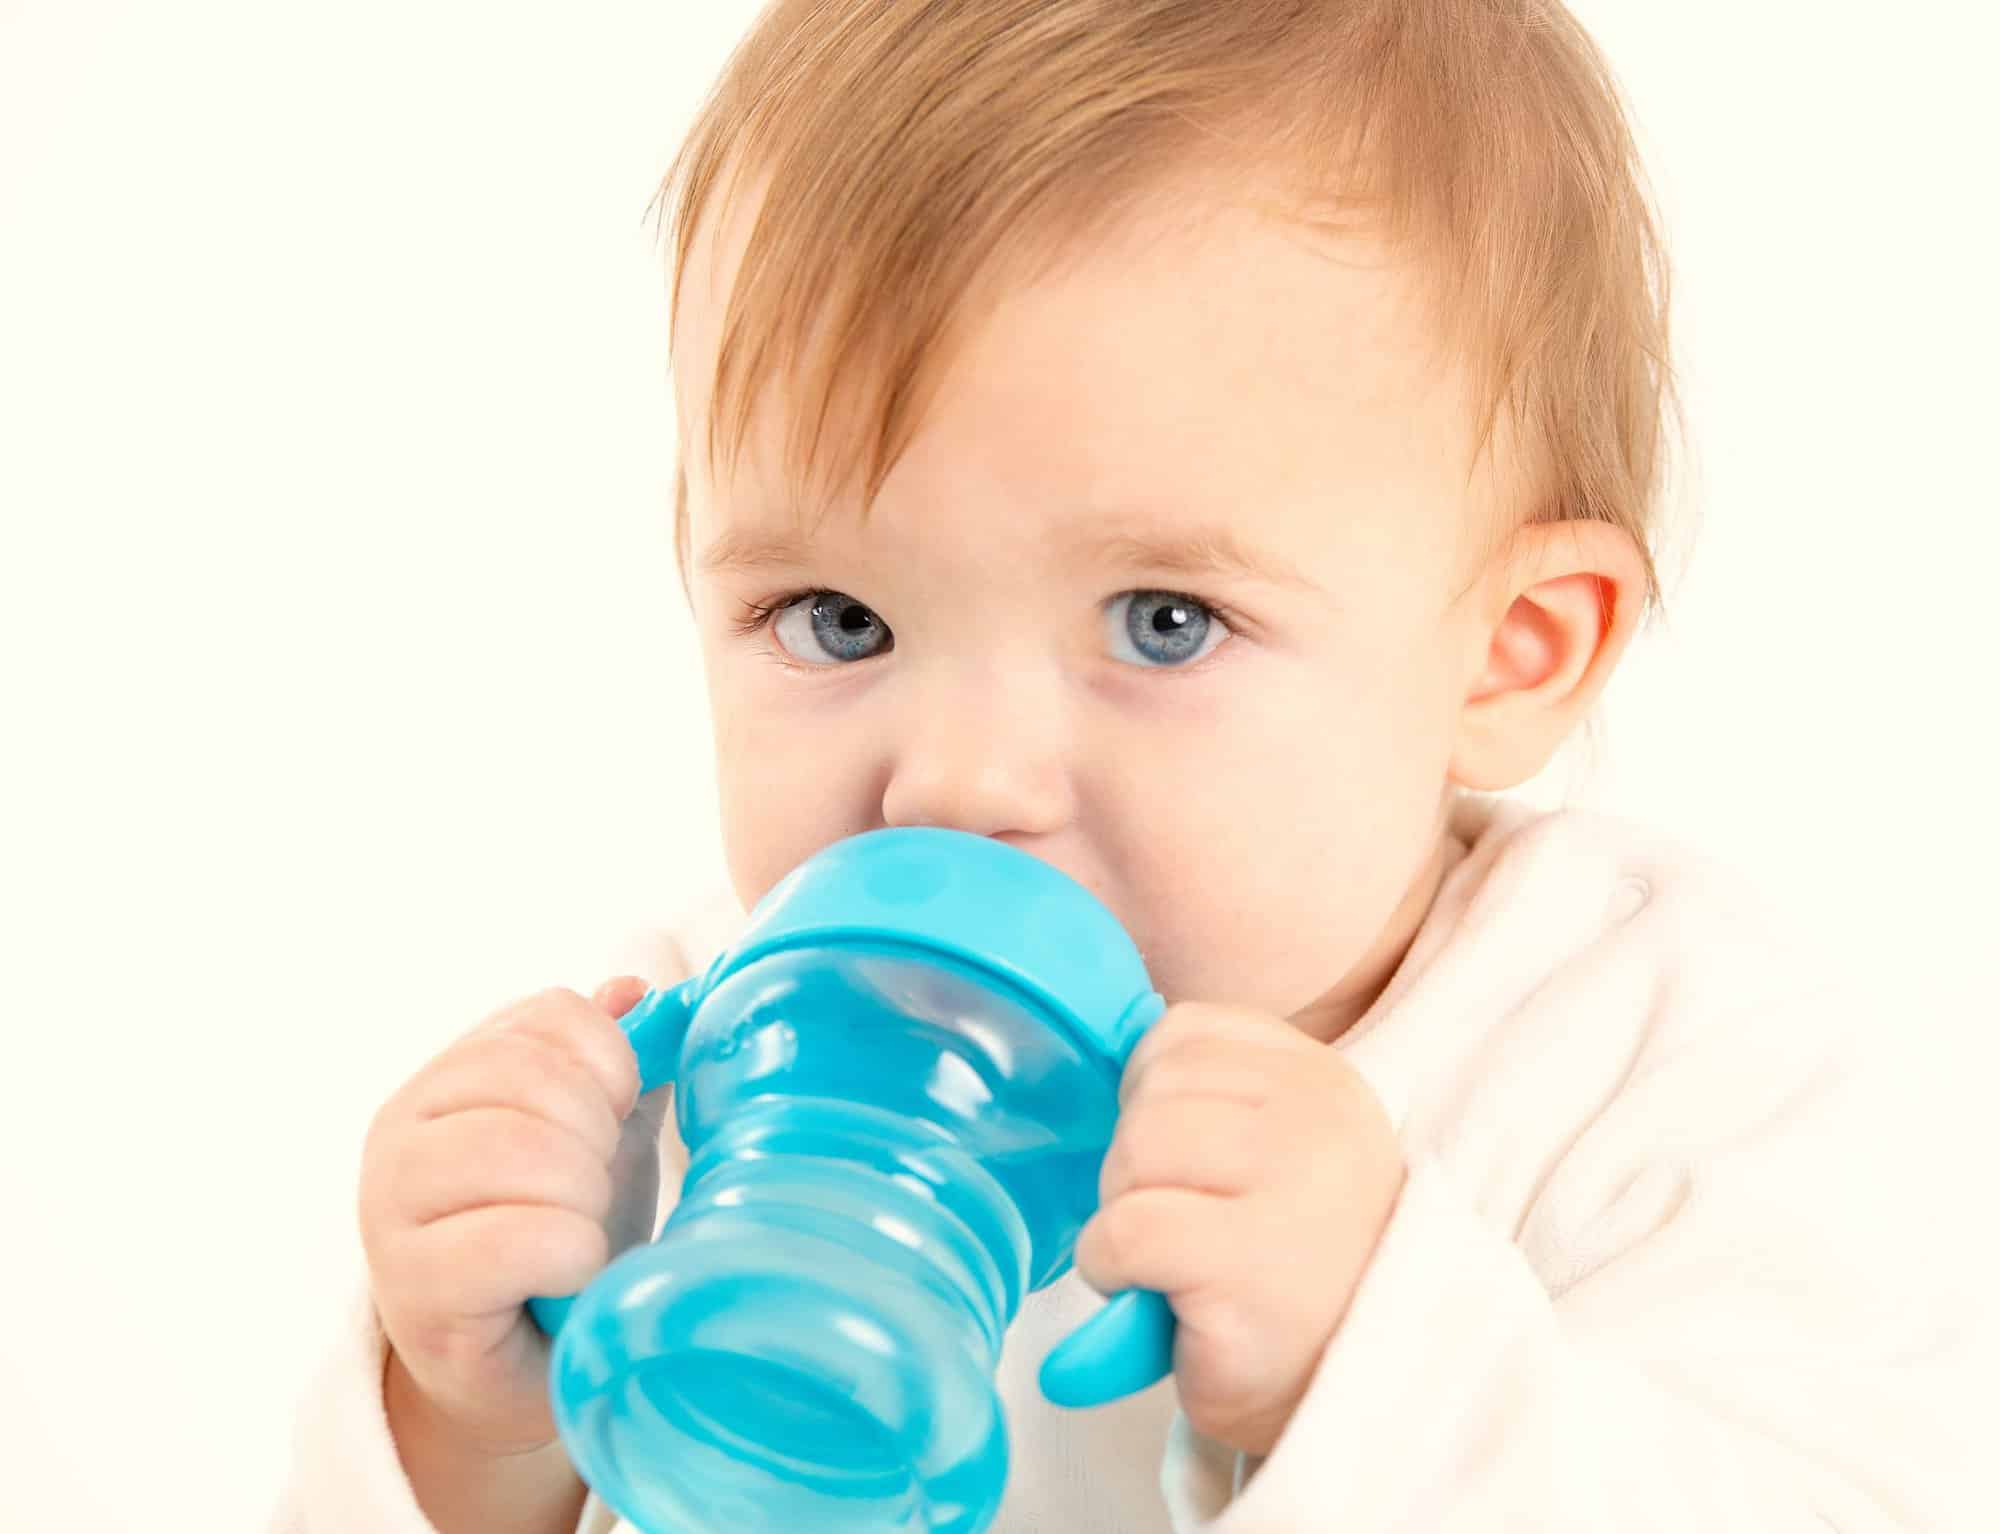 Mi bebé no quiere agua: ¿Qué puedo hacer? - Criar con Sentido Común